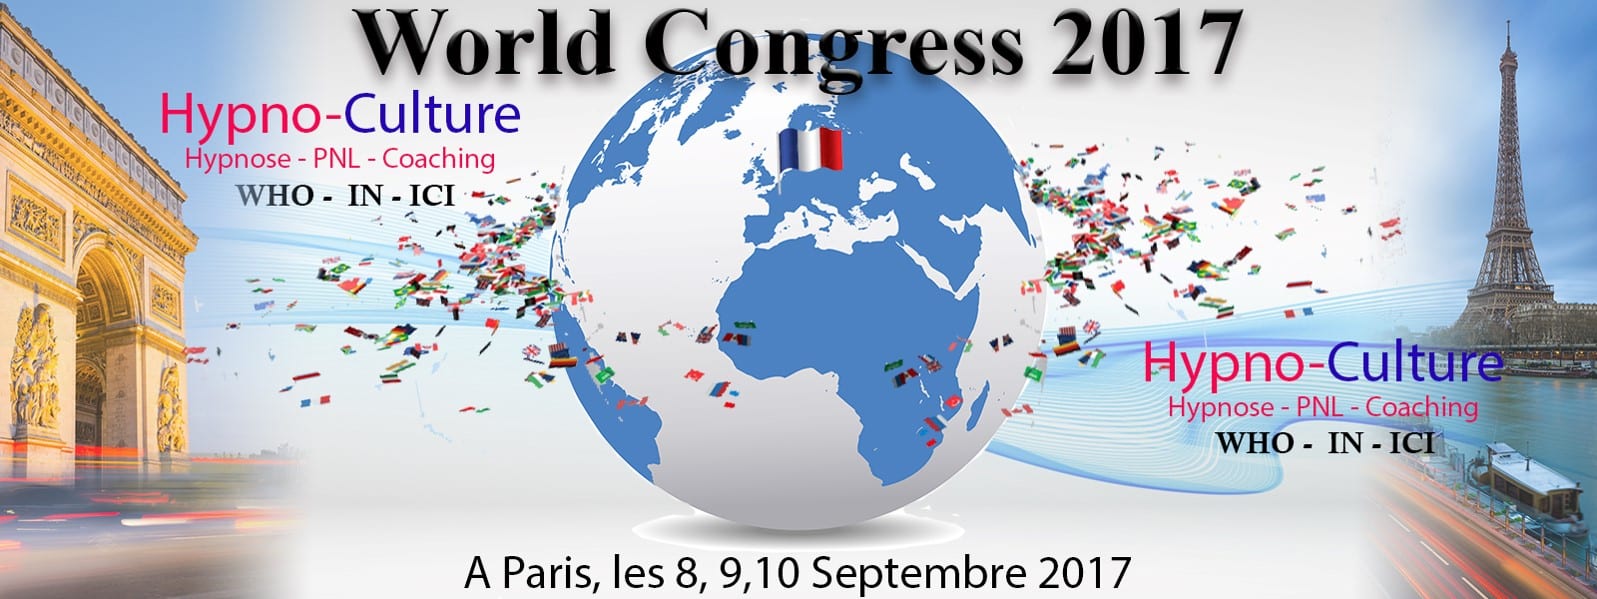 World Congress 2017 à Paris